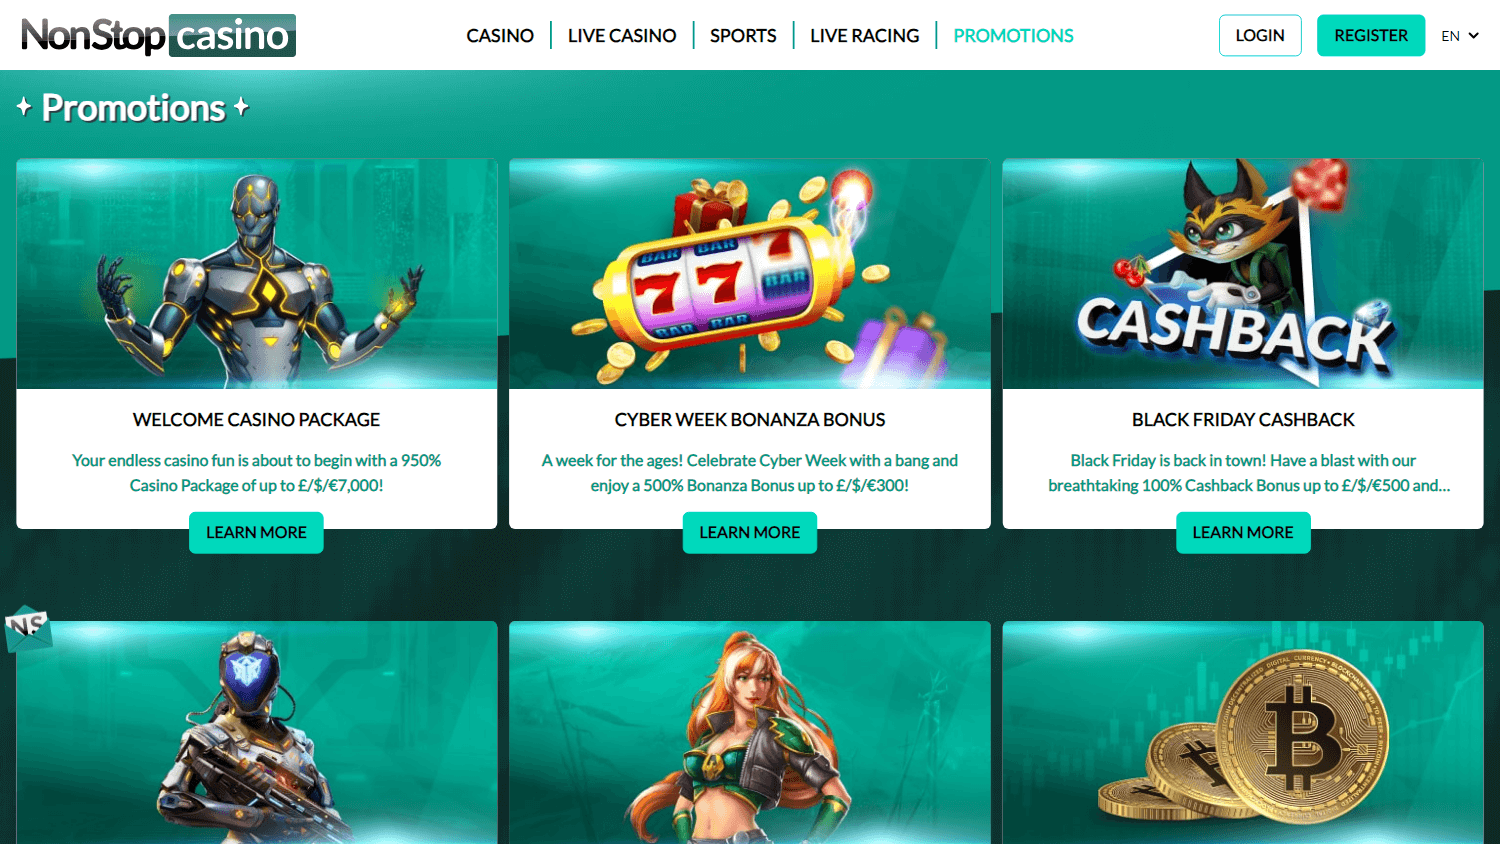 nonstop_casino_promotions_desktop